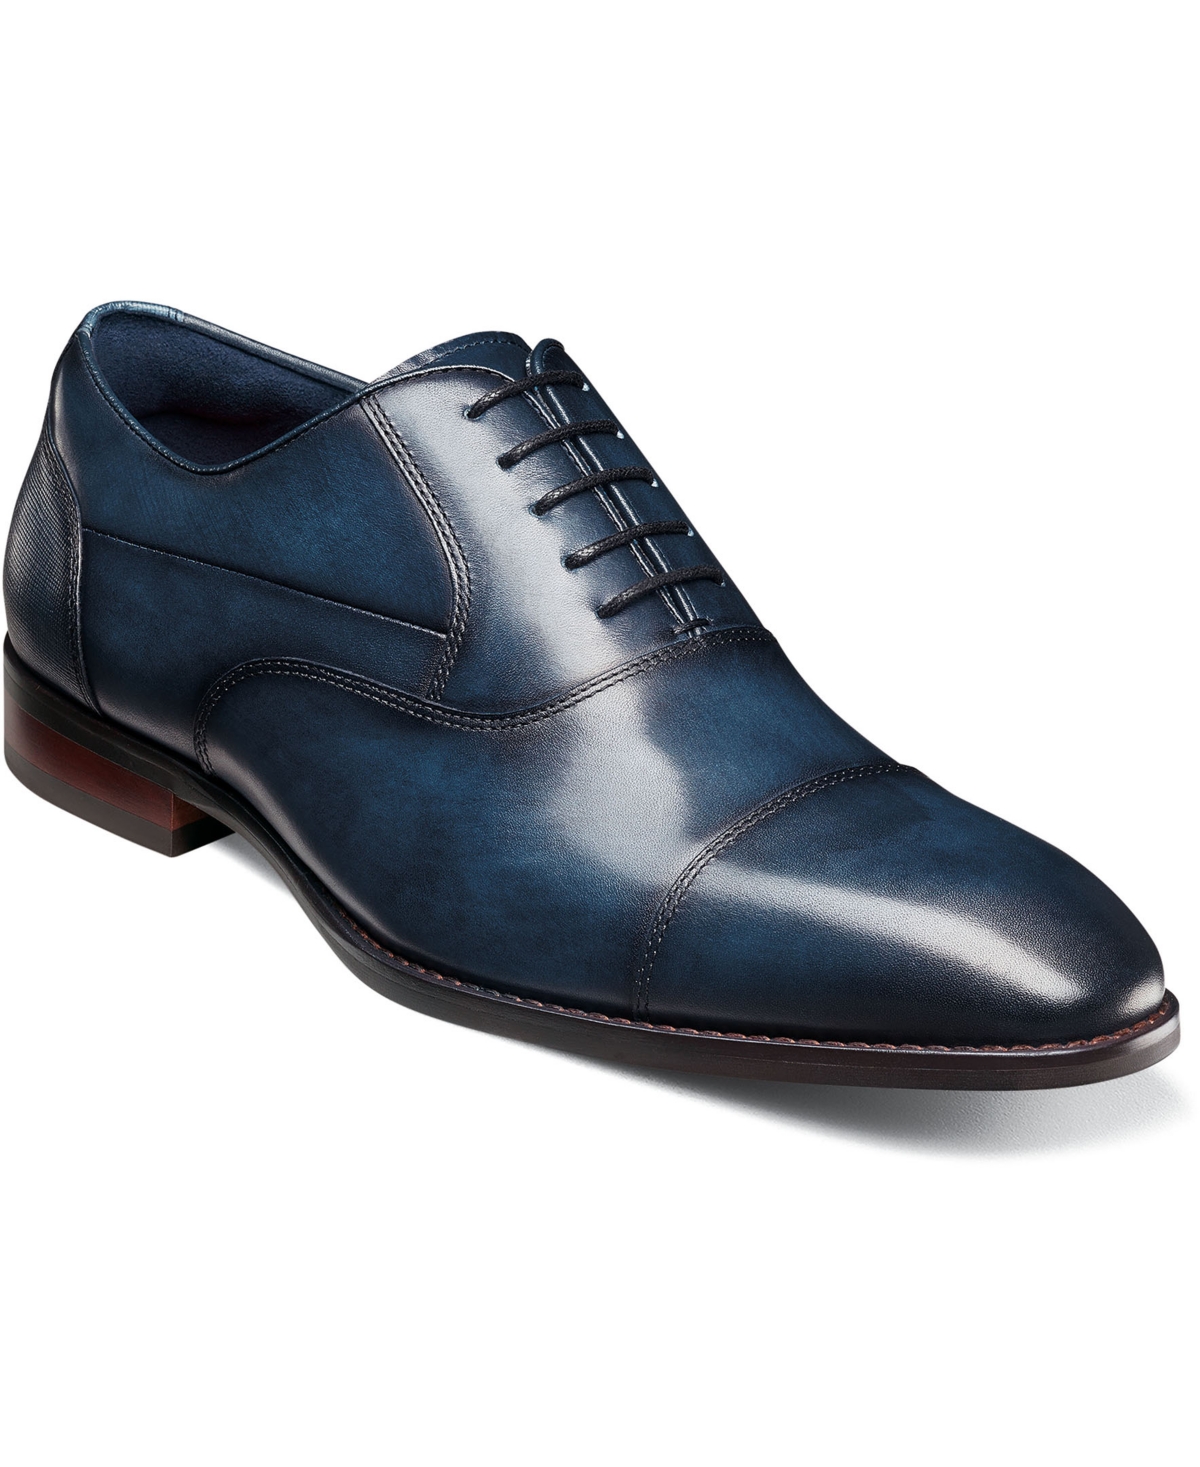 Men's Kallum Cap-Toe Oxford Dress Shoe - Navy